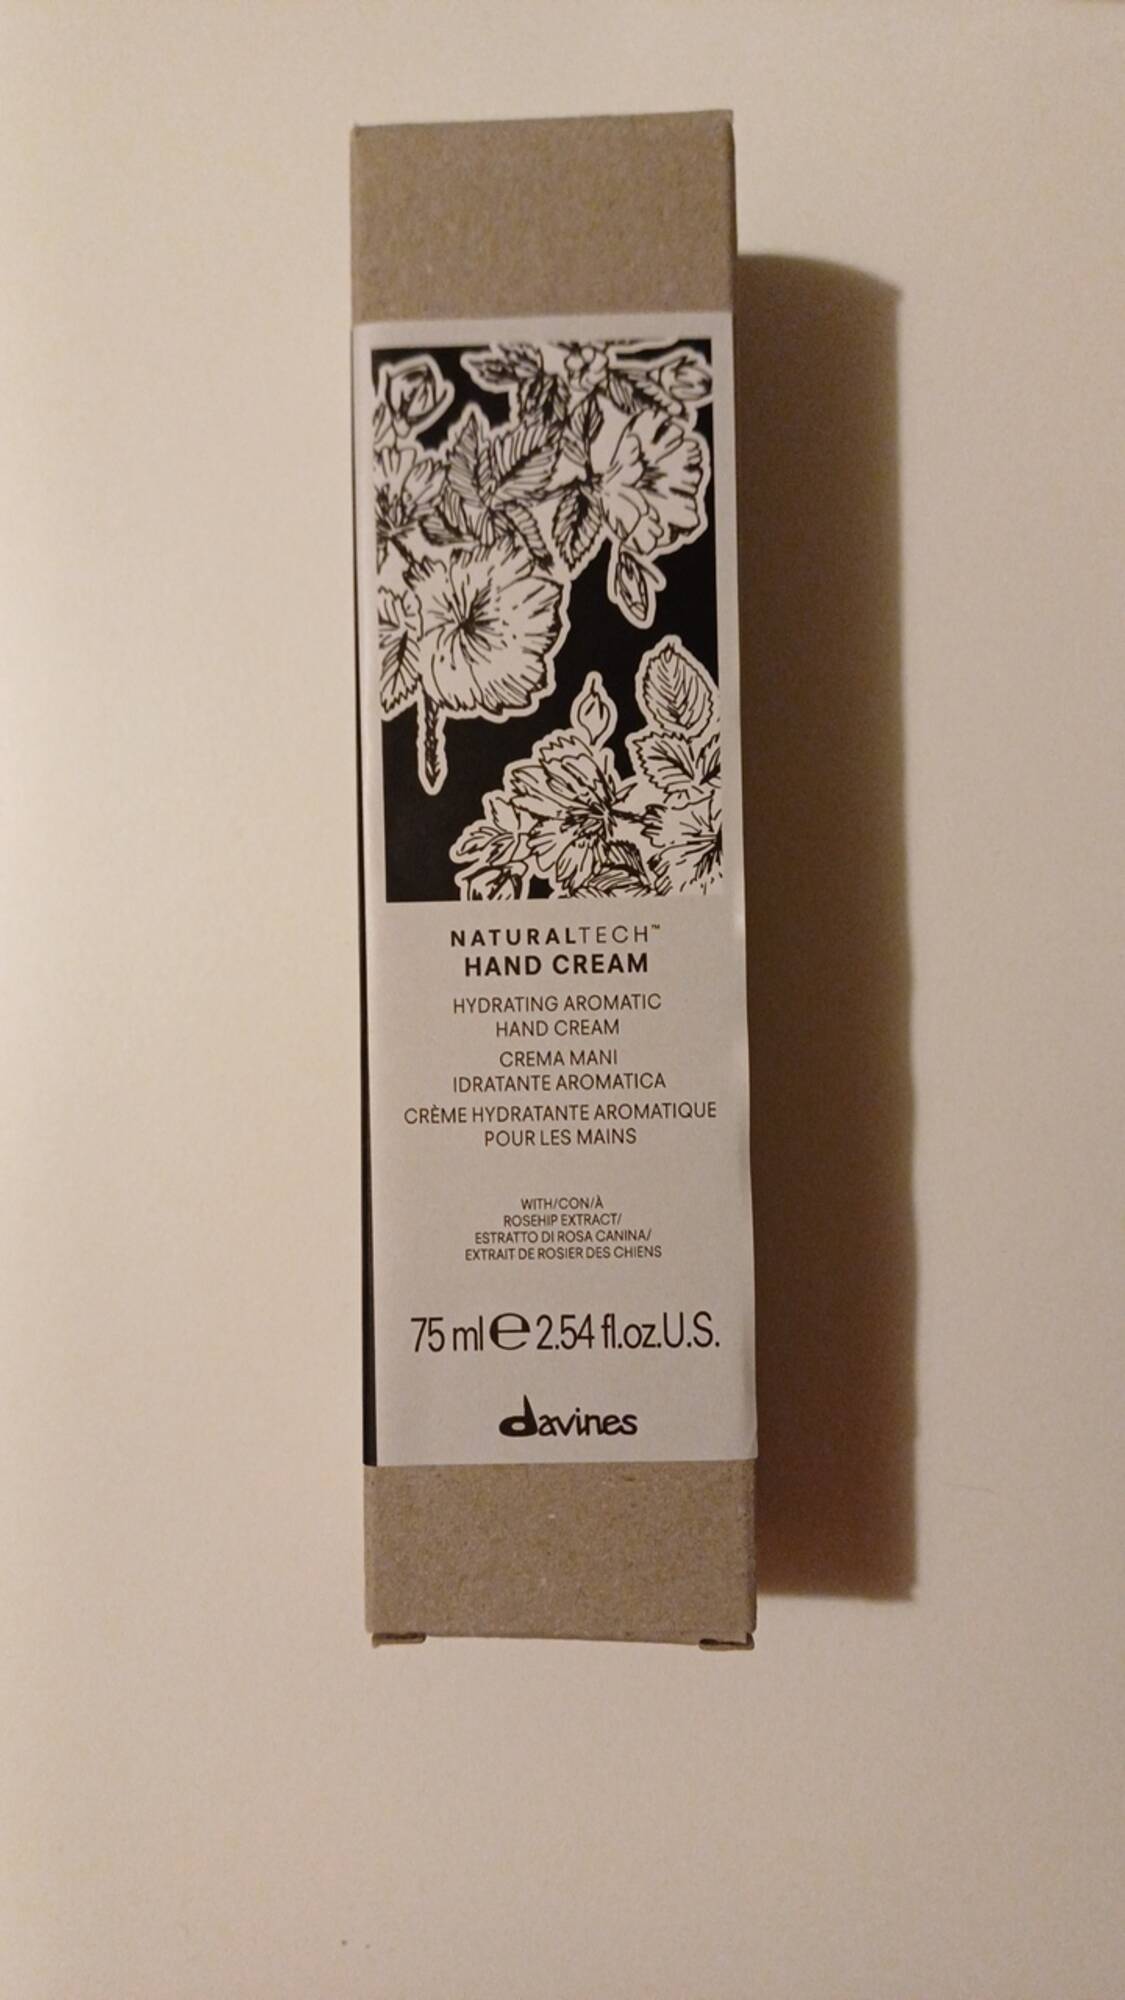 DAVINES - Crème hydratante aromatique pour les mains